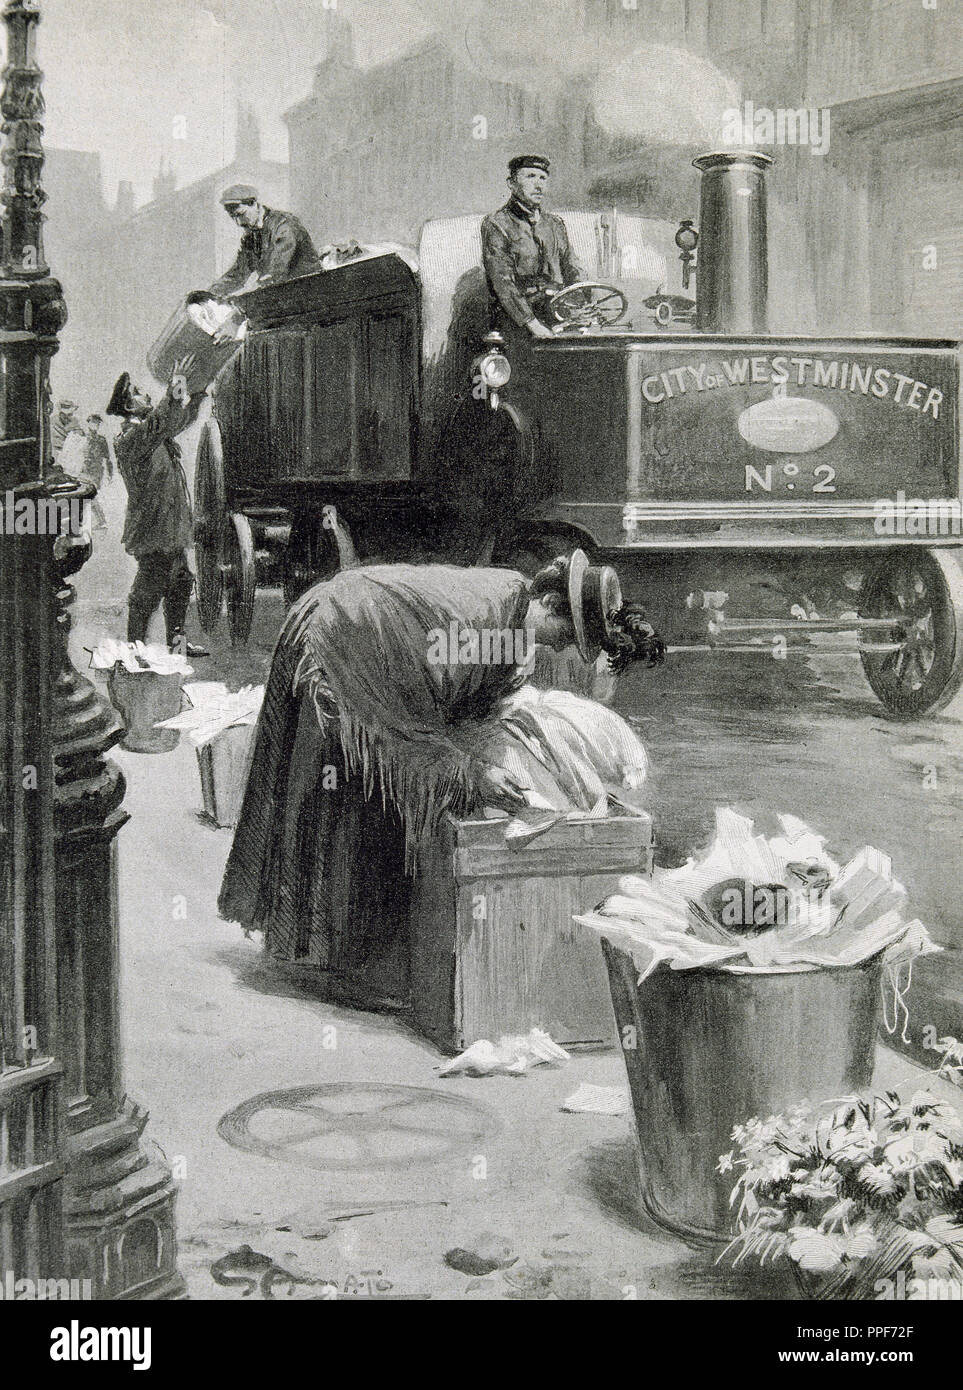 United Kingdom. Londres. Ramasser des bennes à ordures dans les rues . Gravure de l'Illustration, 1901. Banque D'Images